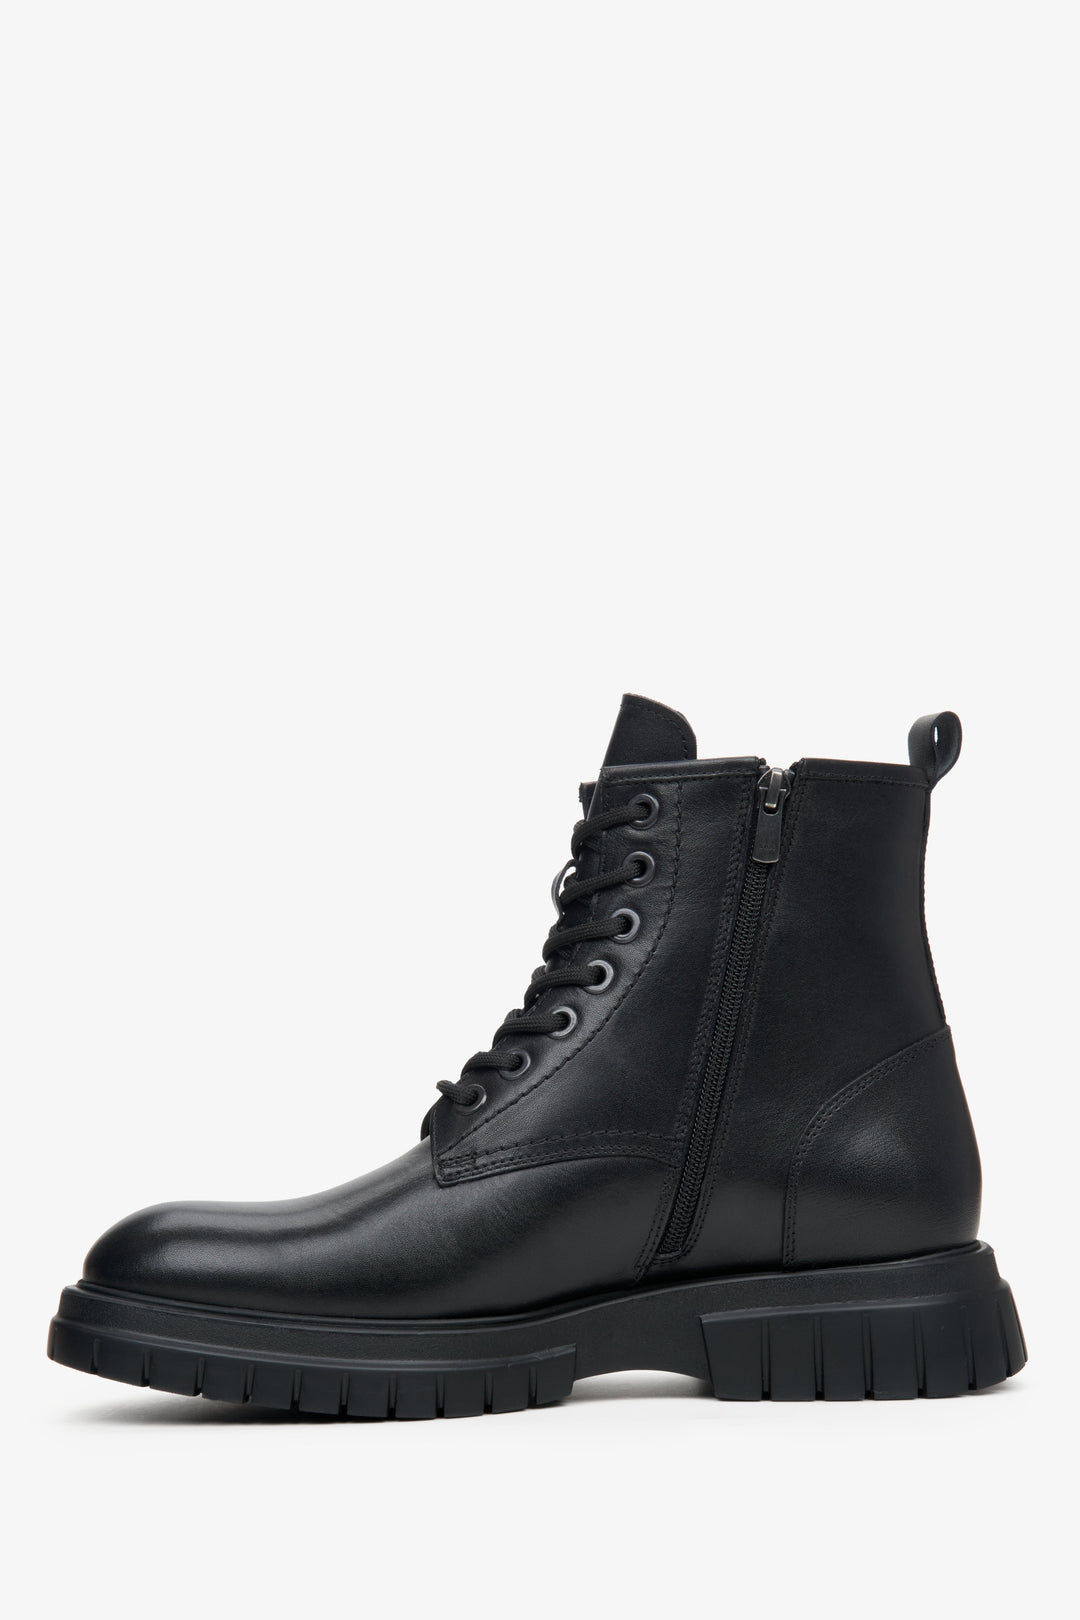 Men's black leather Estro  winter ankle boots - shoe profile